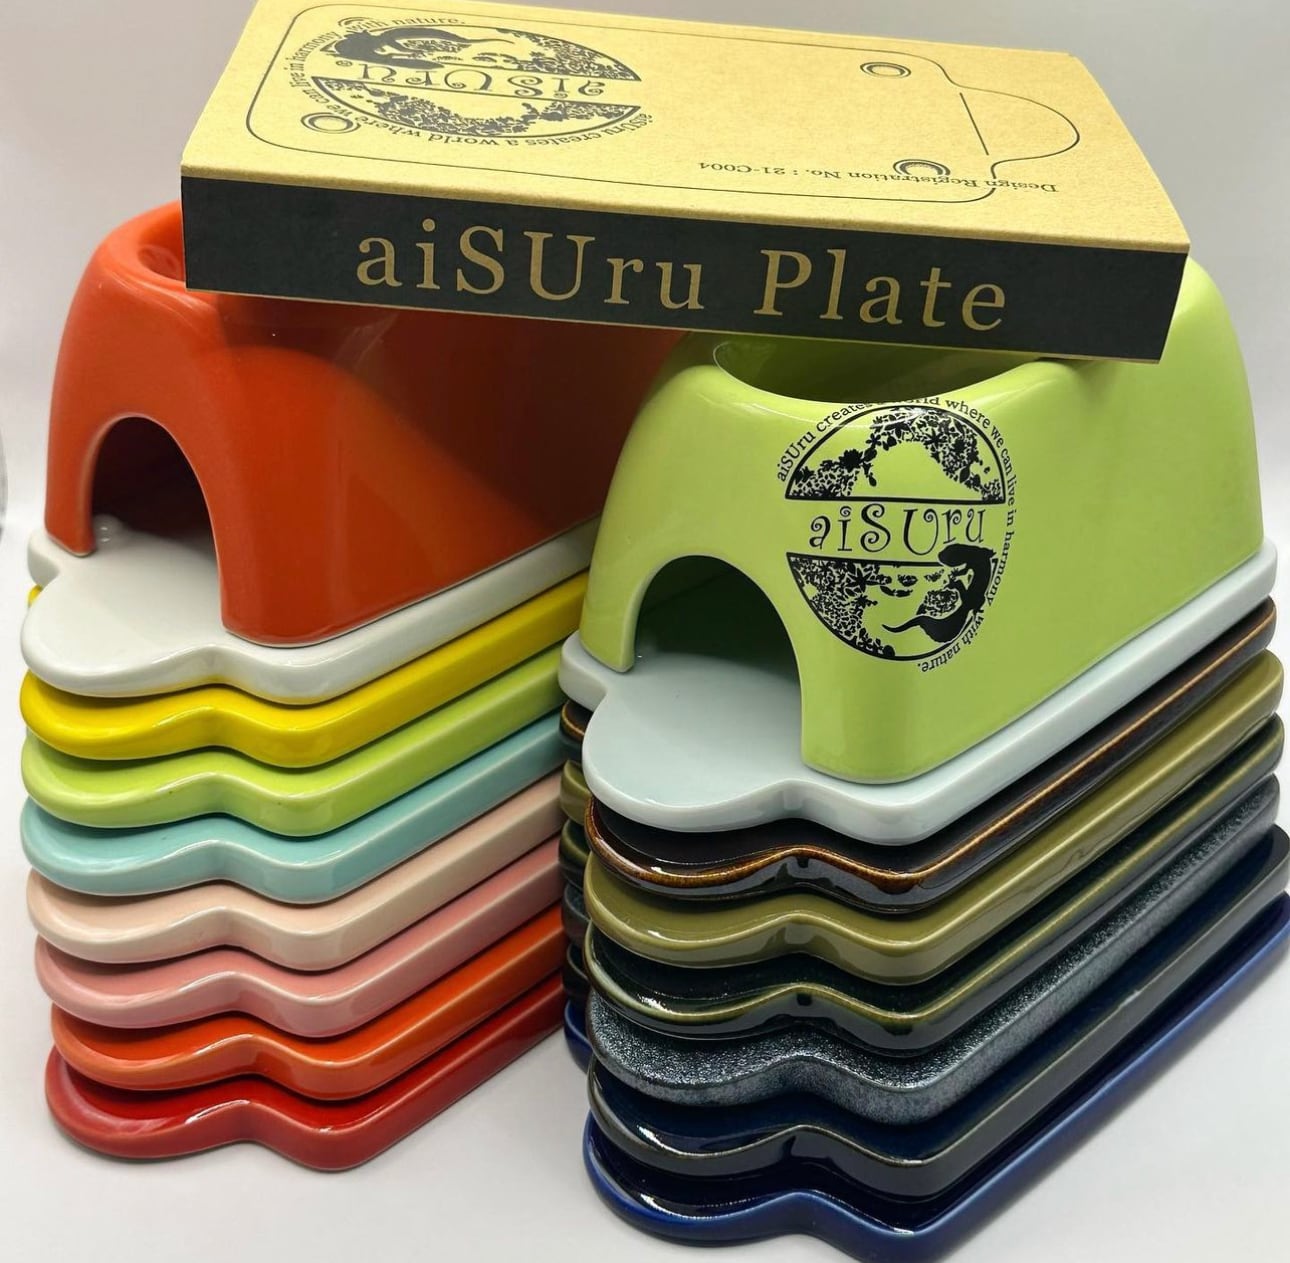 aiSUru Plate【PI】Gold Logo